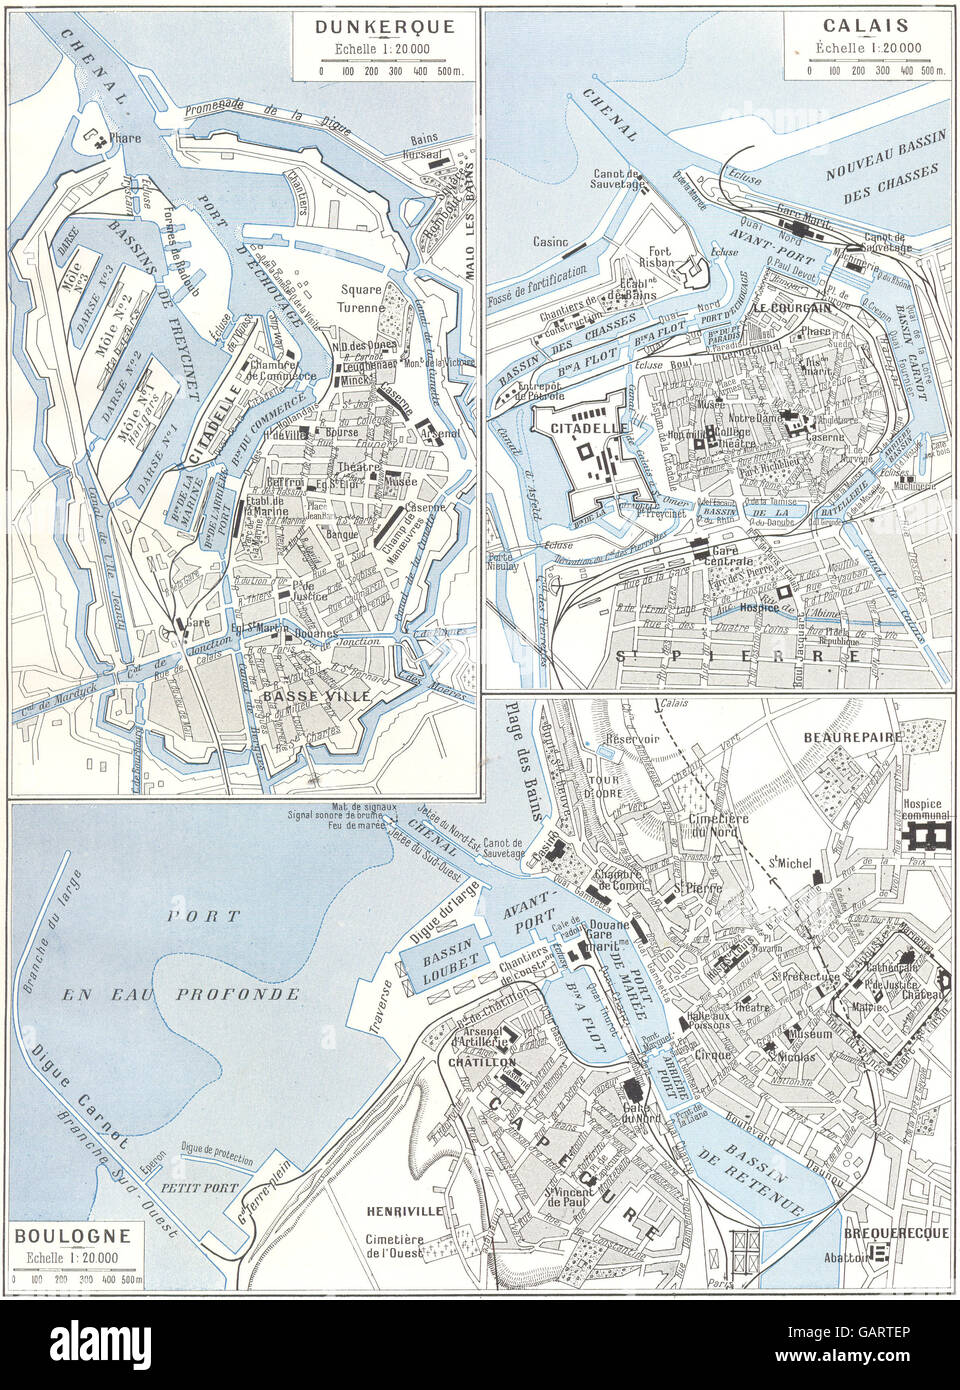 PAS- DE- CALAIS: Calais- Boulogne- Dunkerque, 1900 antique map Stock Photo